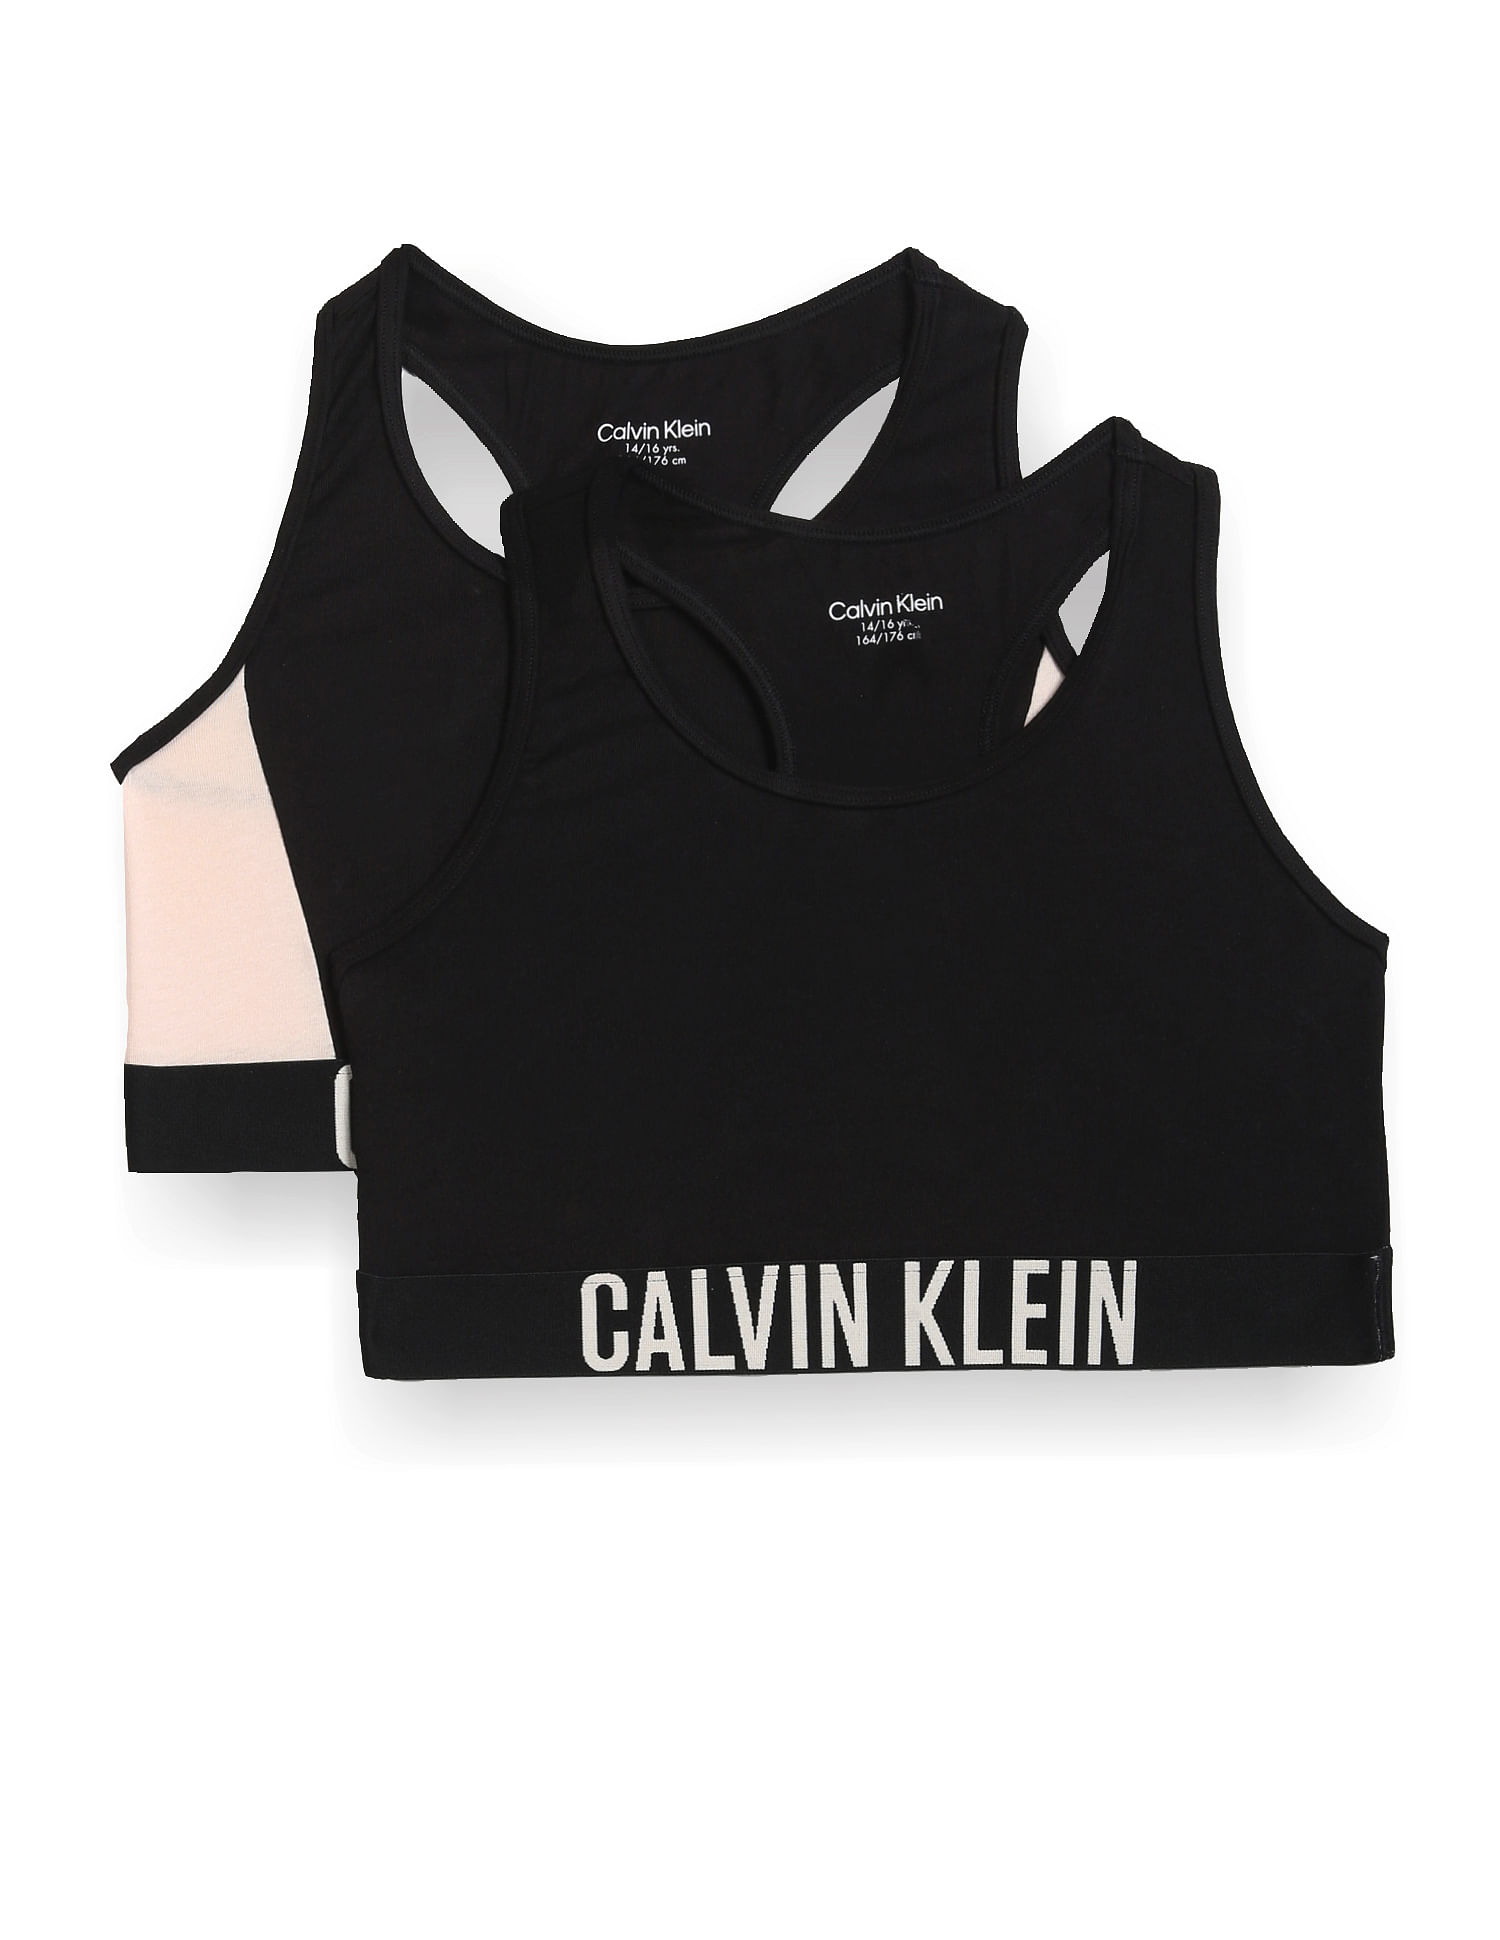 Buy Girls' Calvin Klein Underwear Online